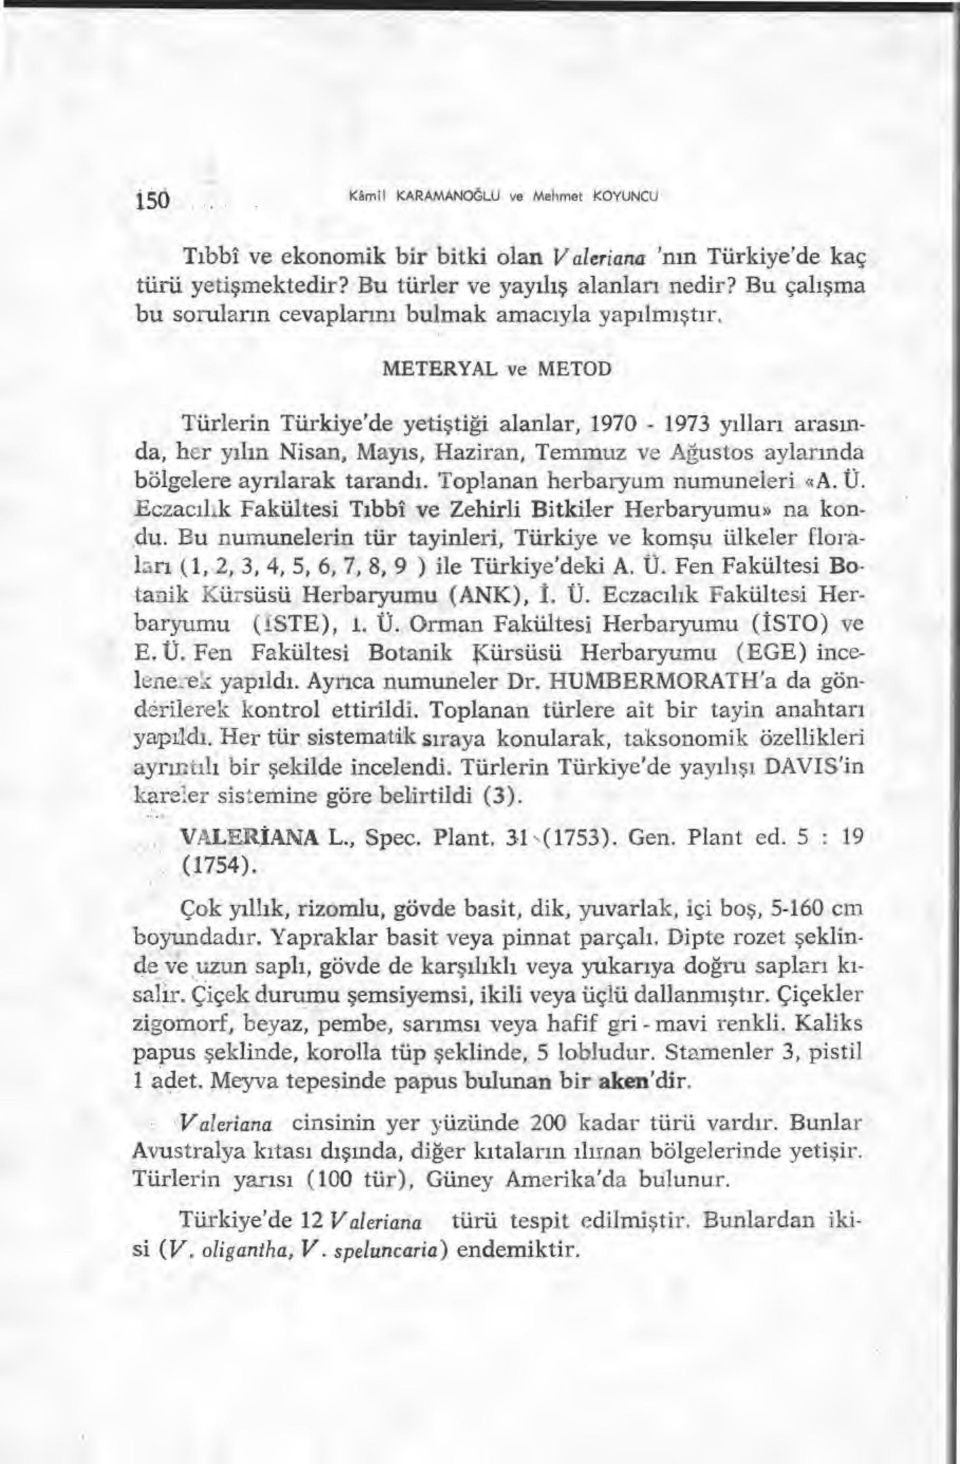 METERYAL ve METOD Türlerin Türkiye'de yeti ştiği alanlar, 1970-1973 y ılları aras ında, her y ılın Nisan, Mayıs, Haziran, Temmuz ve A ğustos aylar ında bölgelere ayrılarak tarand ı.